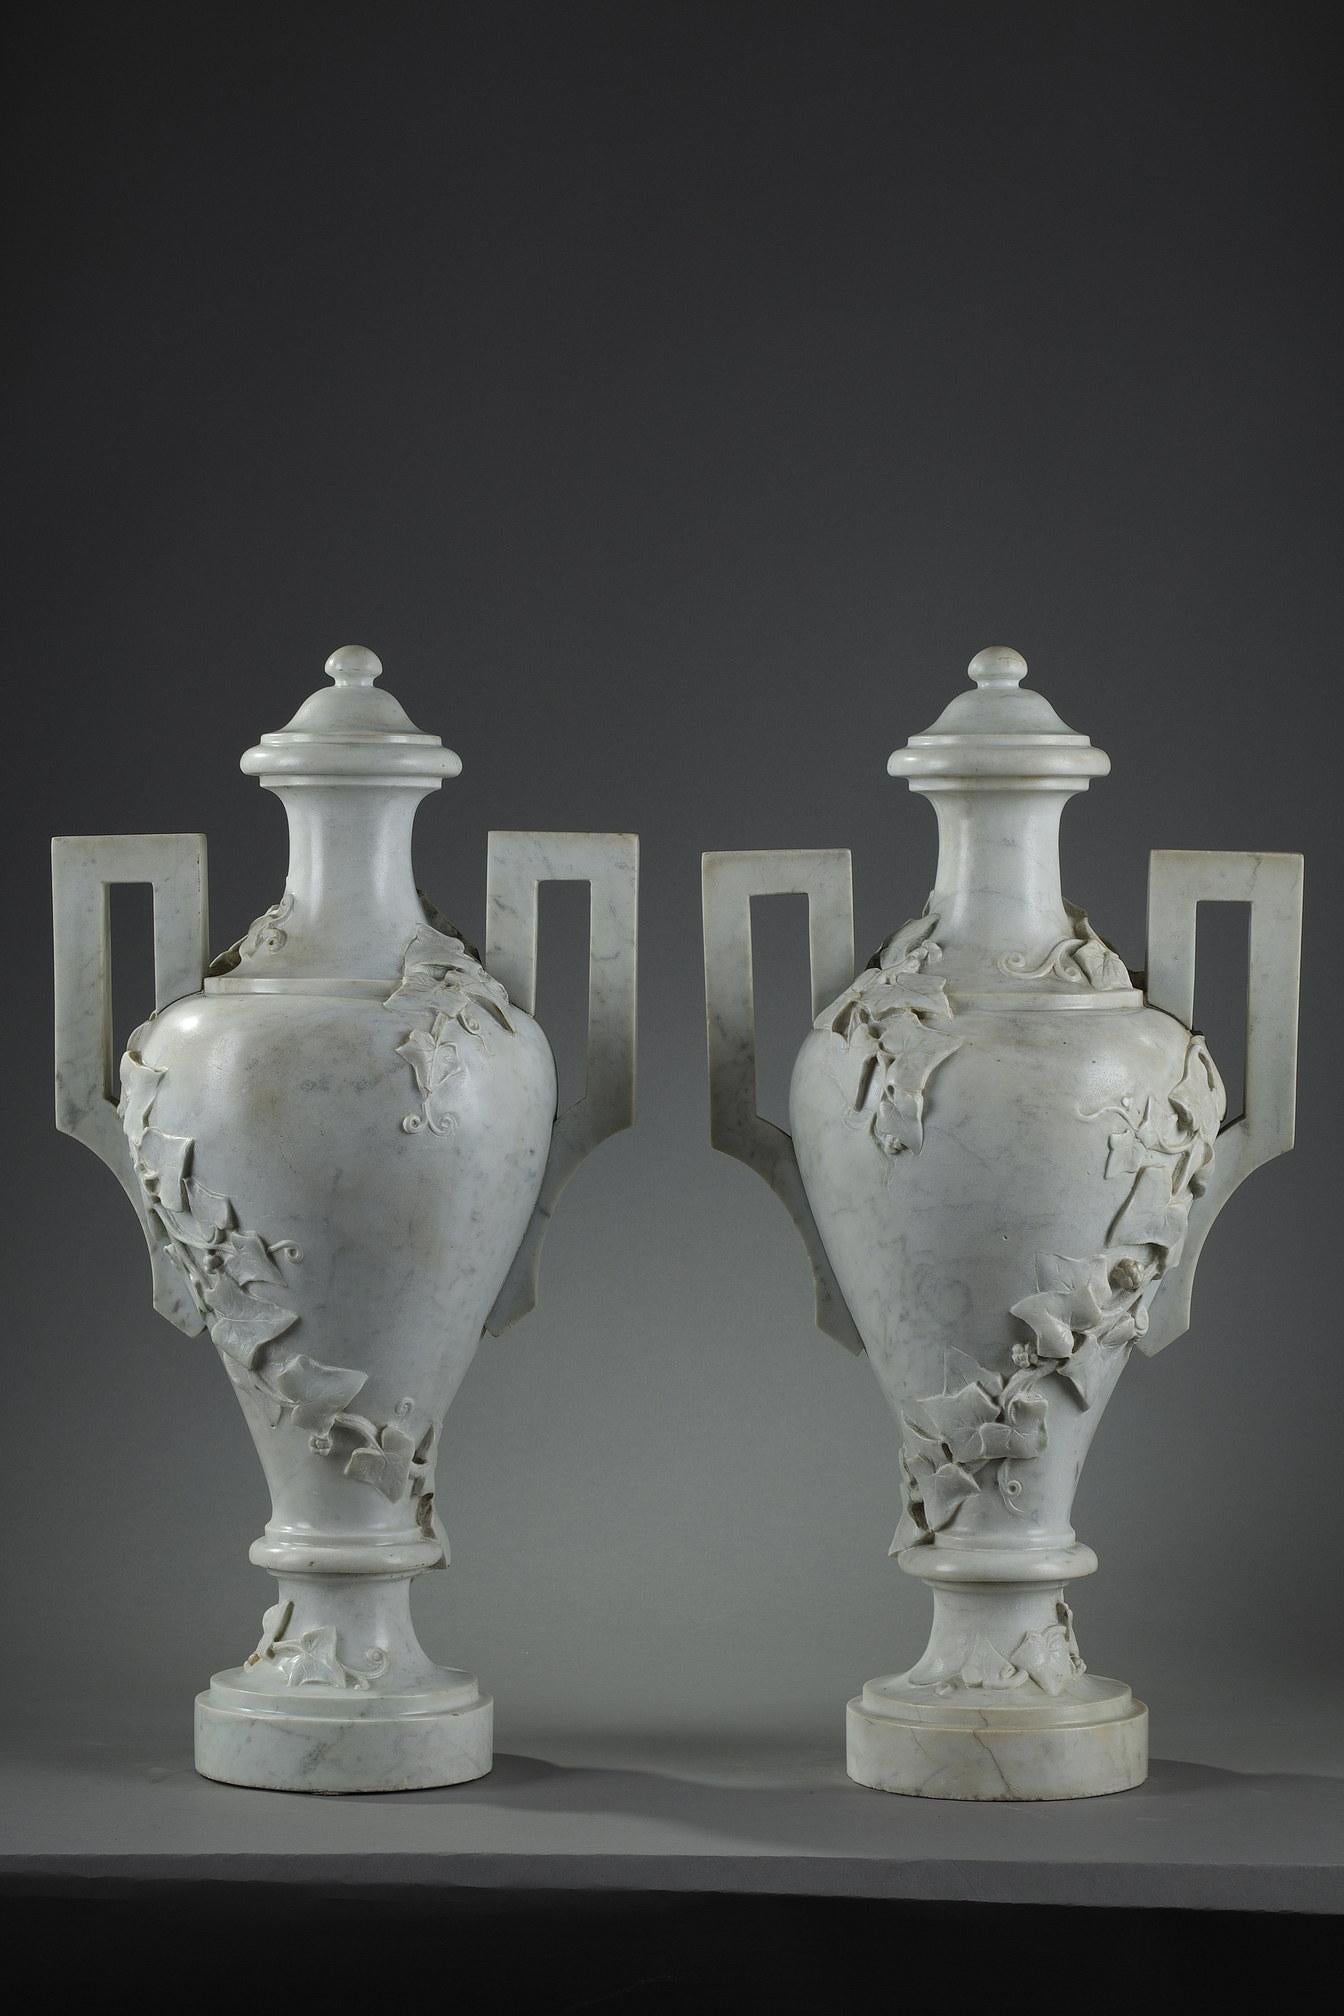 Deux grands vases couverts avec pied en marbre blanc de Carrare de forme d'amphore grecque, sculptés dans du lierre grimpant. La forme des poignées a une forme géométrique et témoigne du goût de la Grèce antique au XIXe siècle. 

Dimensions de la